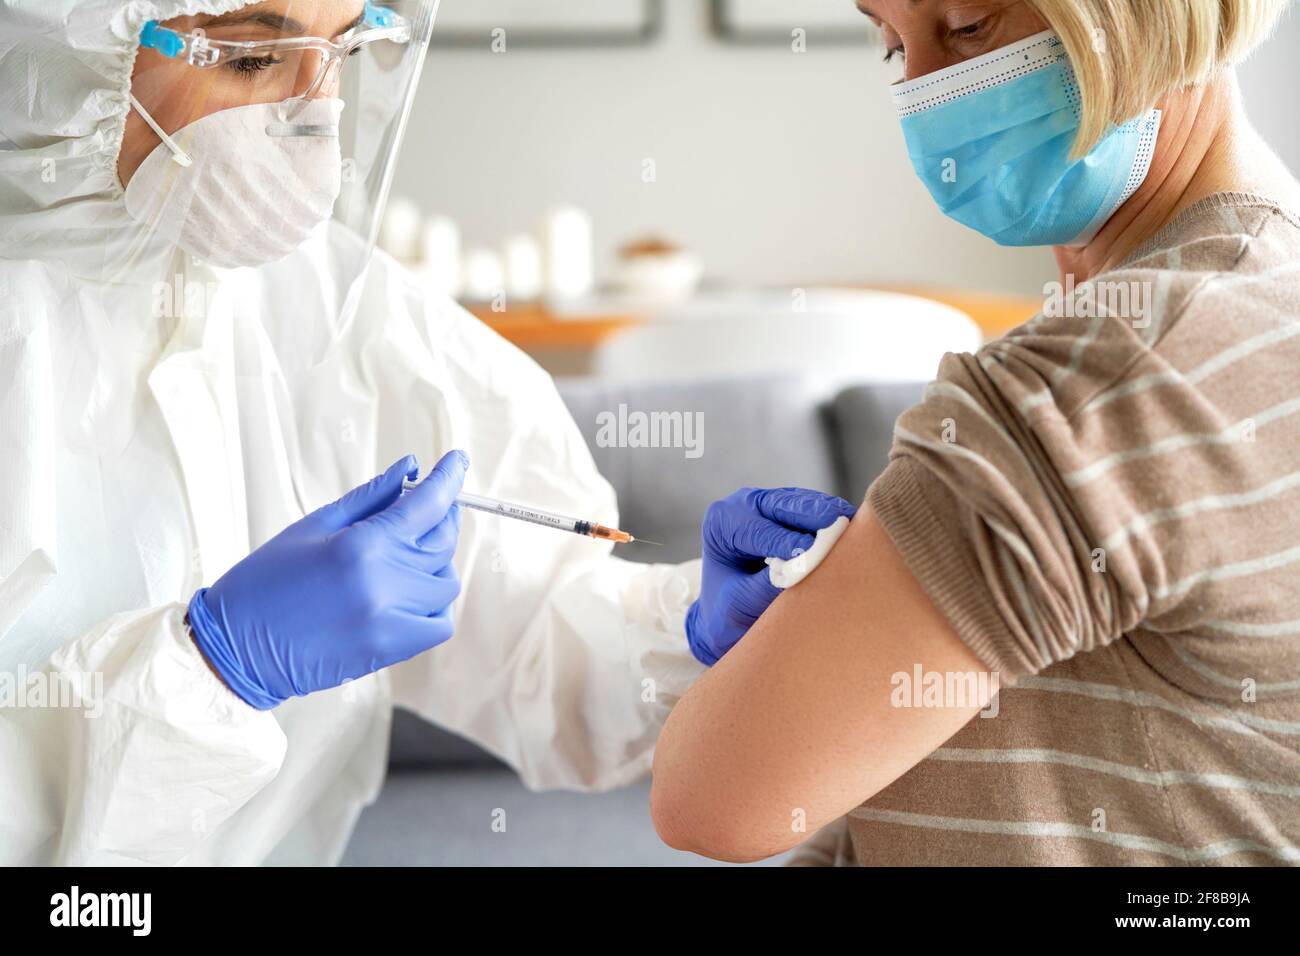 Médico en una visita domiciliaria que le da una vacuna a la persona mayor paciente Foto de stock